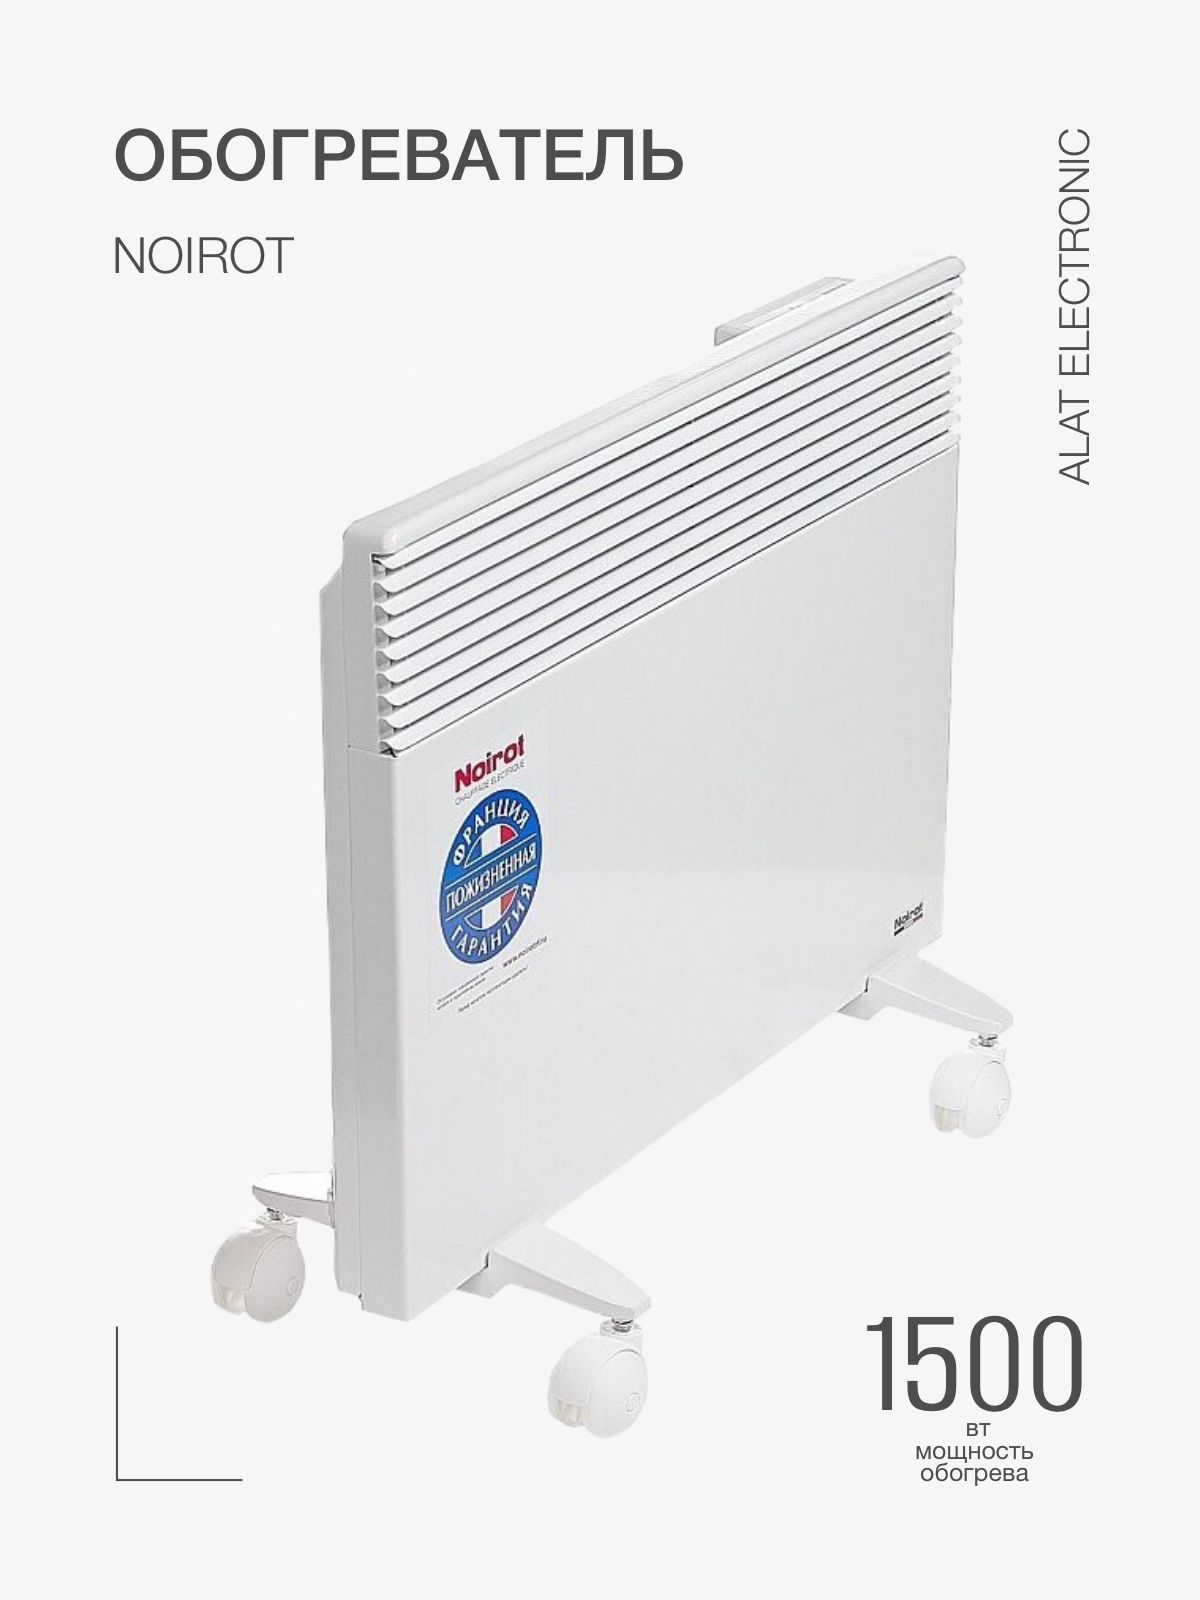 Spot e 3 plus. Конвектор Noirot spot e-3 Plus 1000. Конвектор Noirot spot e-3 Plus 2000. Конвектор Noirot CNX-4 Plus 1500, белый. Noirot CNX-4 Plus 2000.